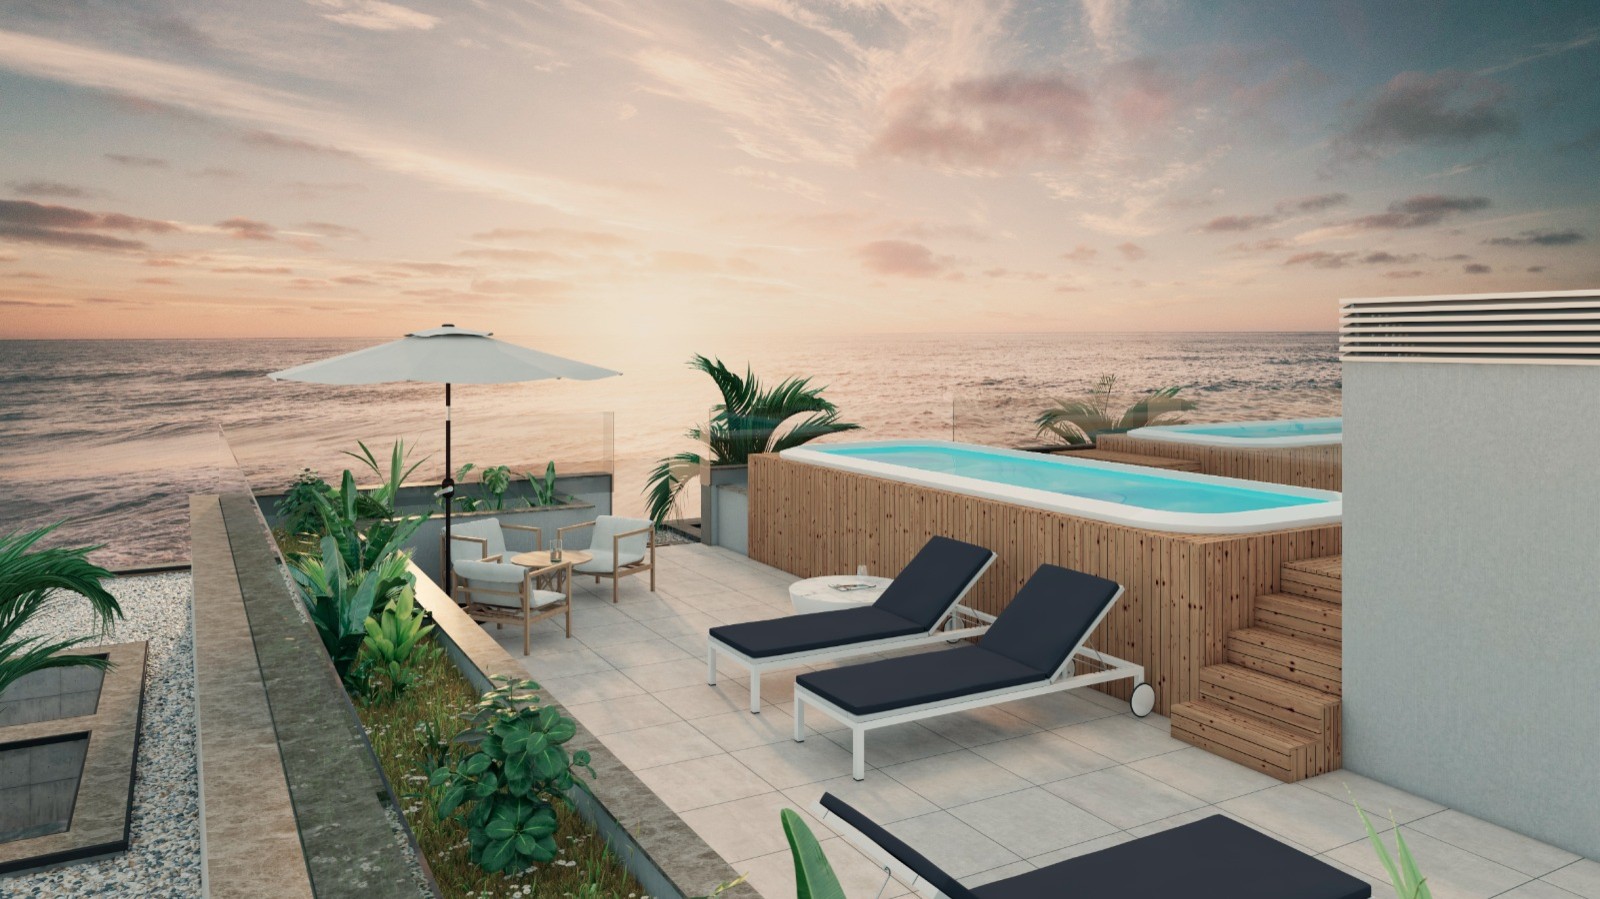 Apartamento T2 com vista de mar, terraço e piscina, para venda, Gaia, Portugal_250373